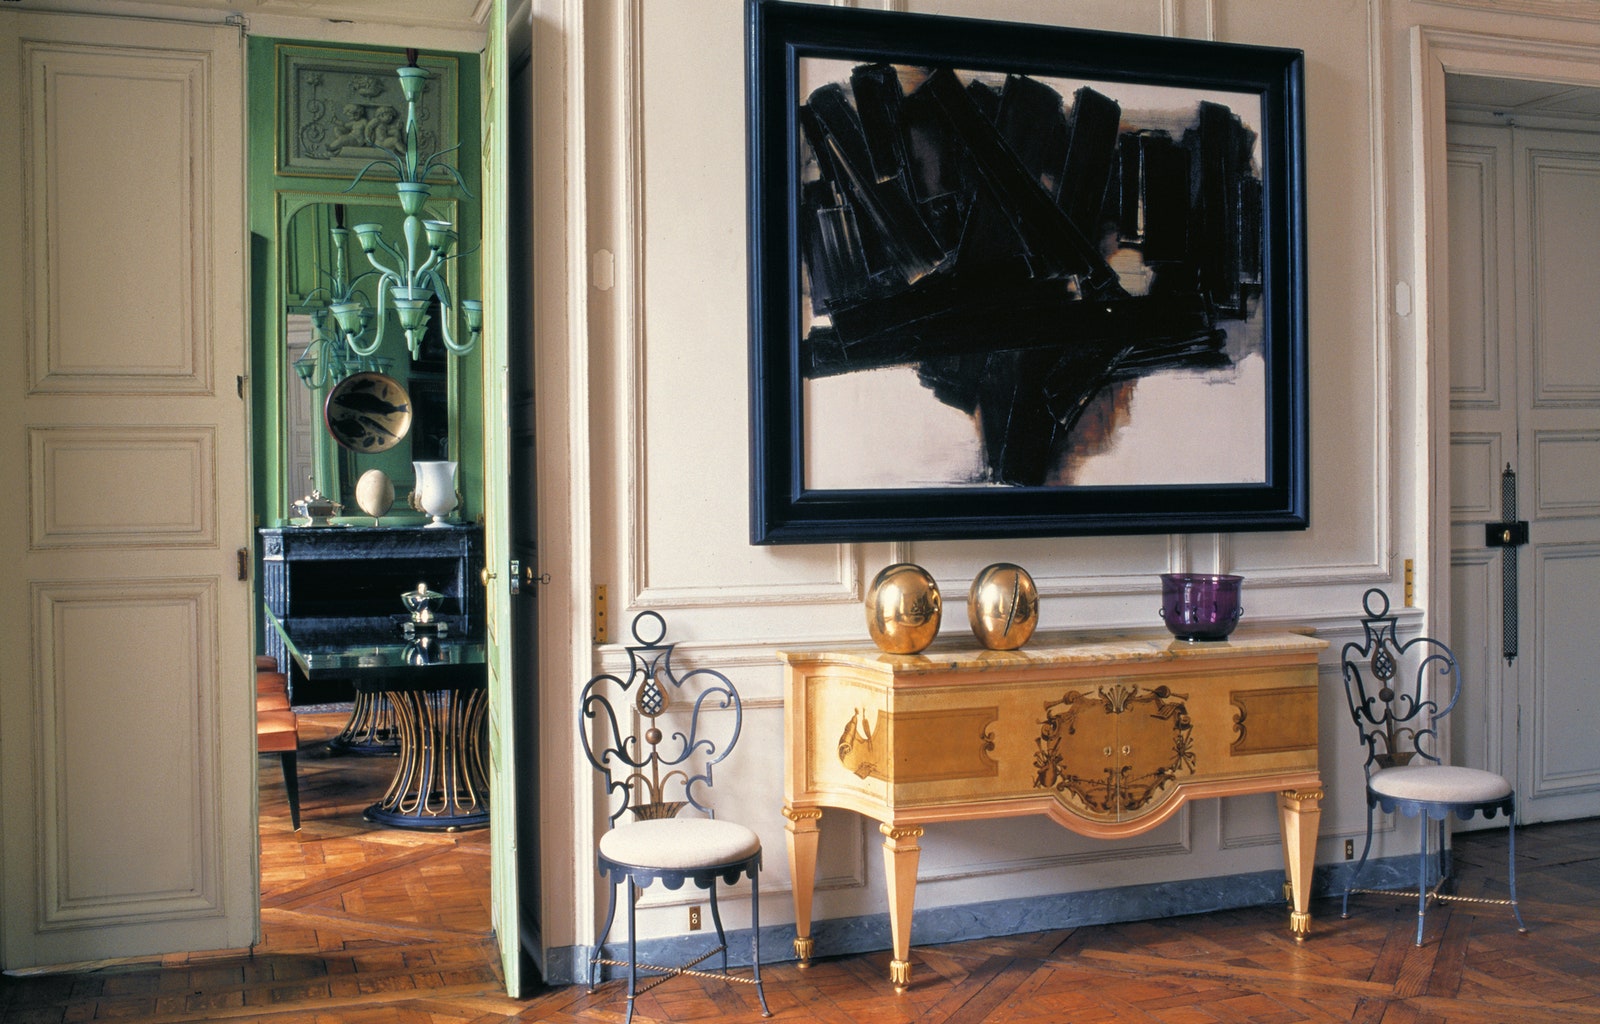 Квартира коллекционера в Париже. Картина Pierre Soulage стулья Poillerat скульптуры Lucio Fontana. Фото Jacques Dirand.